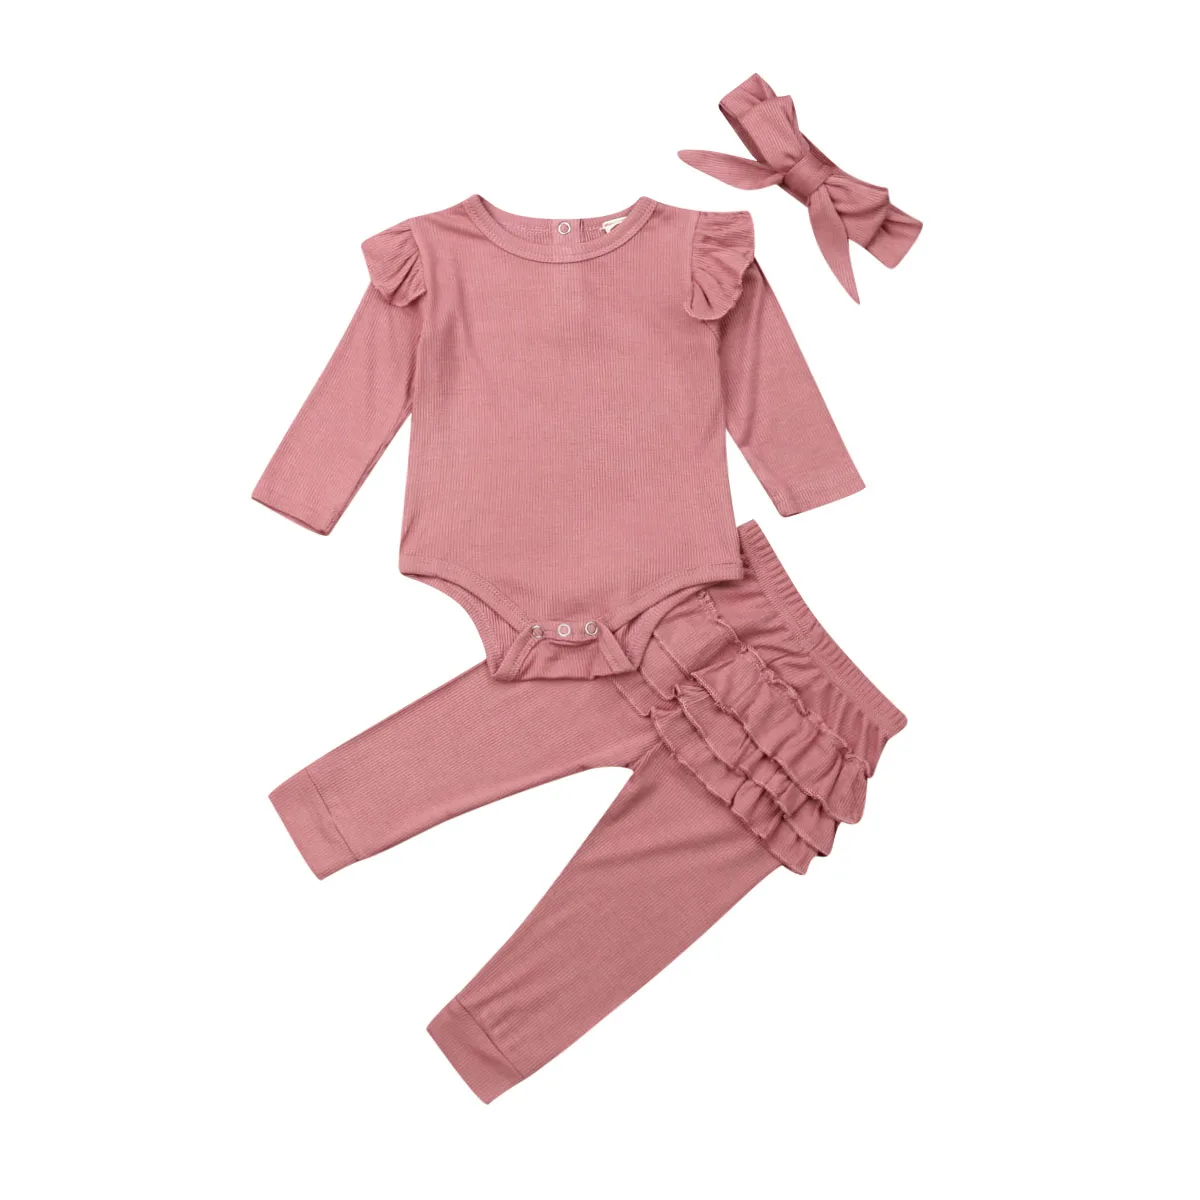 Осенняя одежда для новорожденных девочек и мальчиков от 0 до 24 месяцев, комплекты одежды, Прочный Комбинезон, топ, штаны с оборками, повязка на голову - Цвет: Розовый